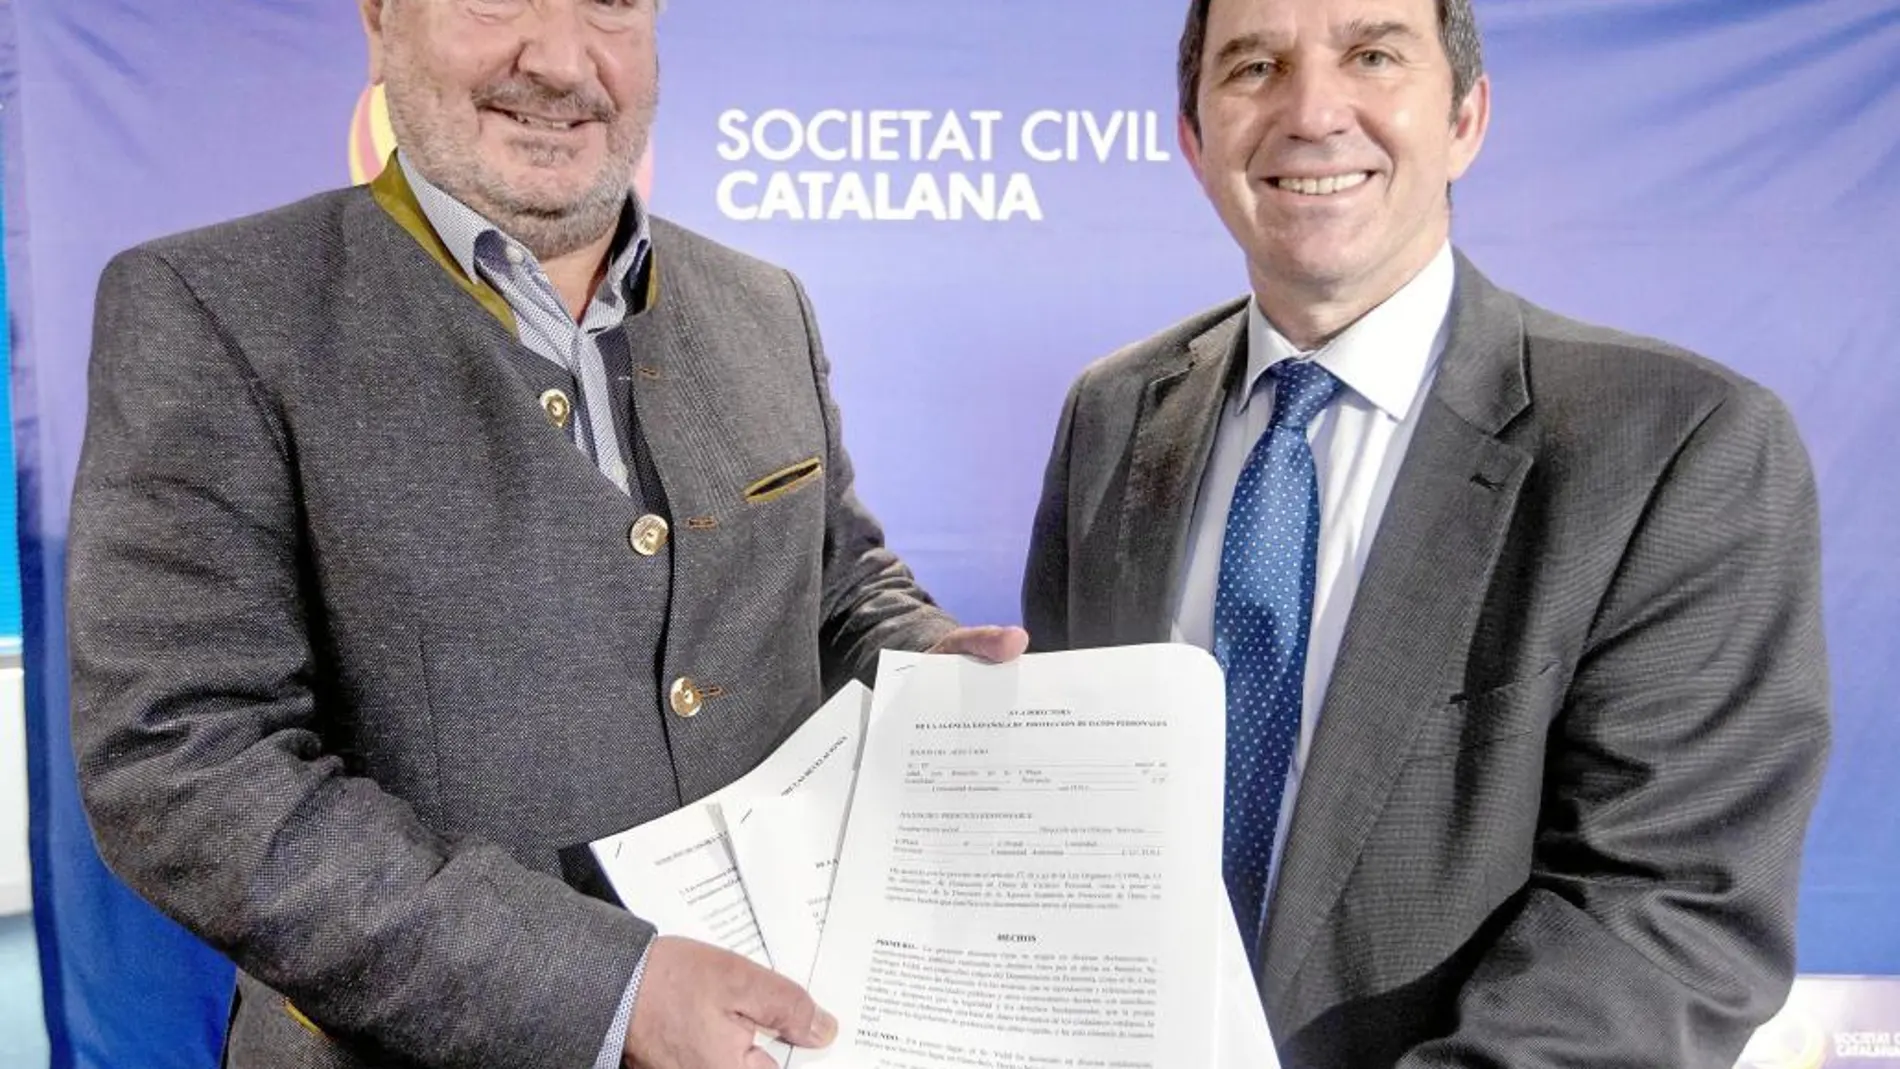 Marian Gomà y José Domingo, ayer durante el acto de Societat Civil Catalana